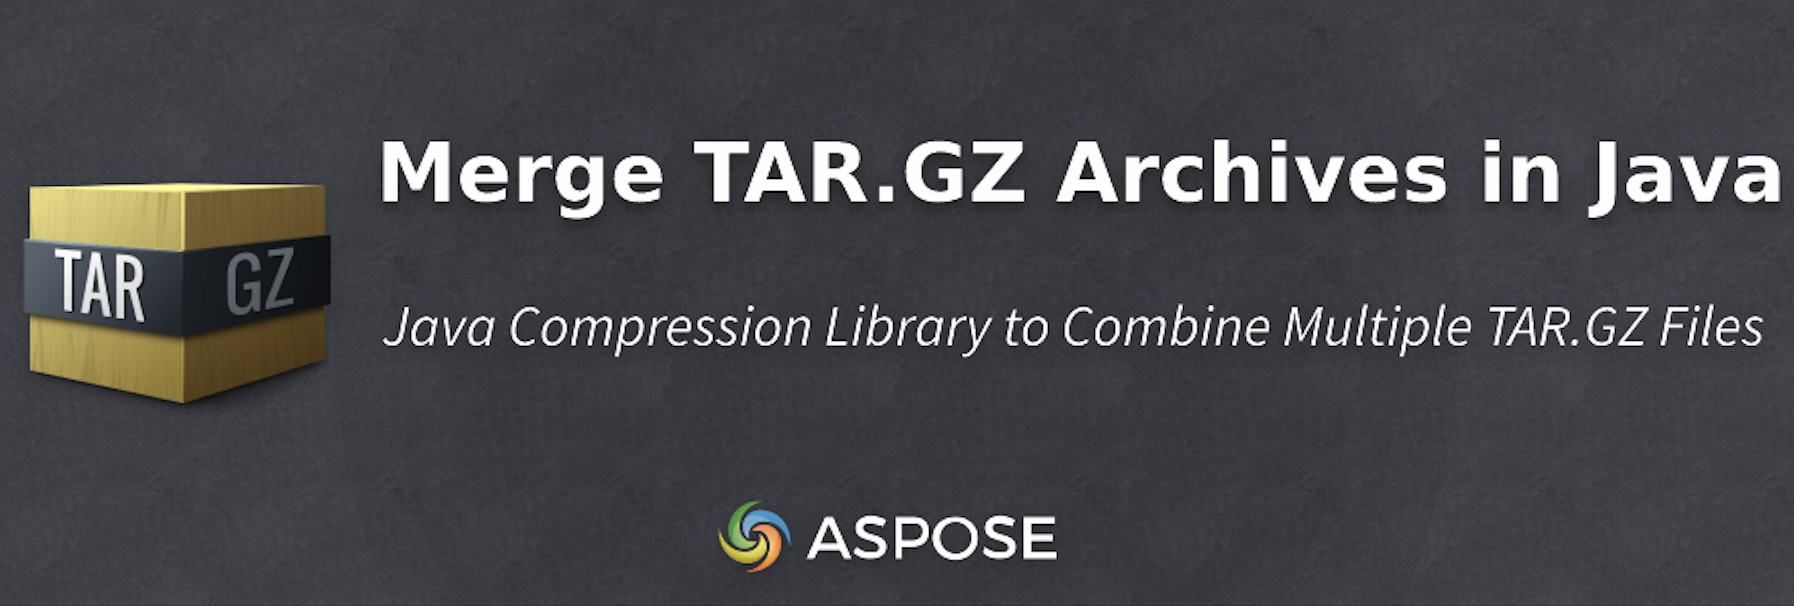 Програмне об’єднання архівів TAR.GZ у Java